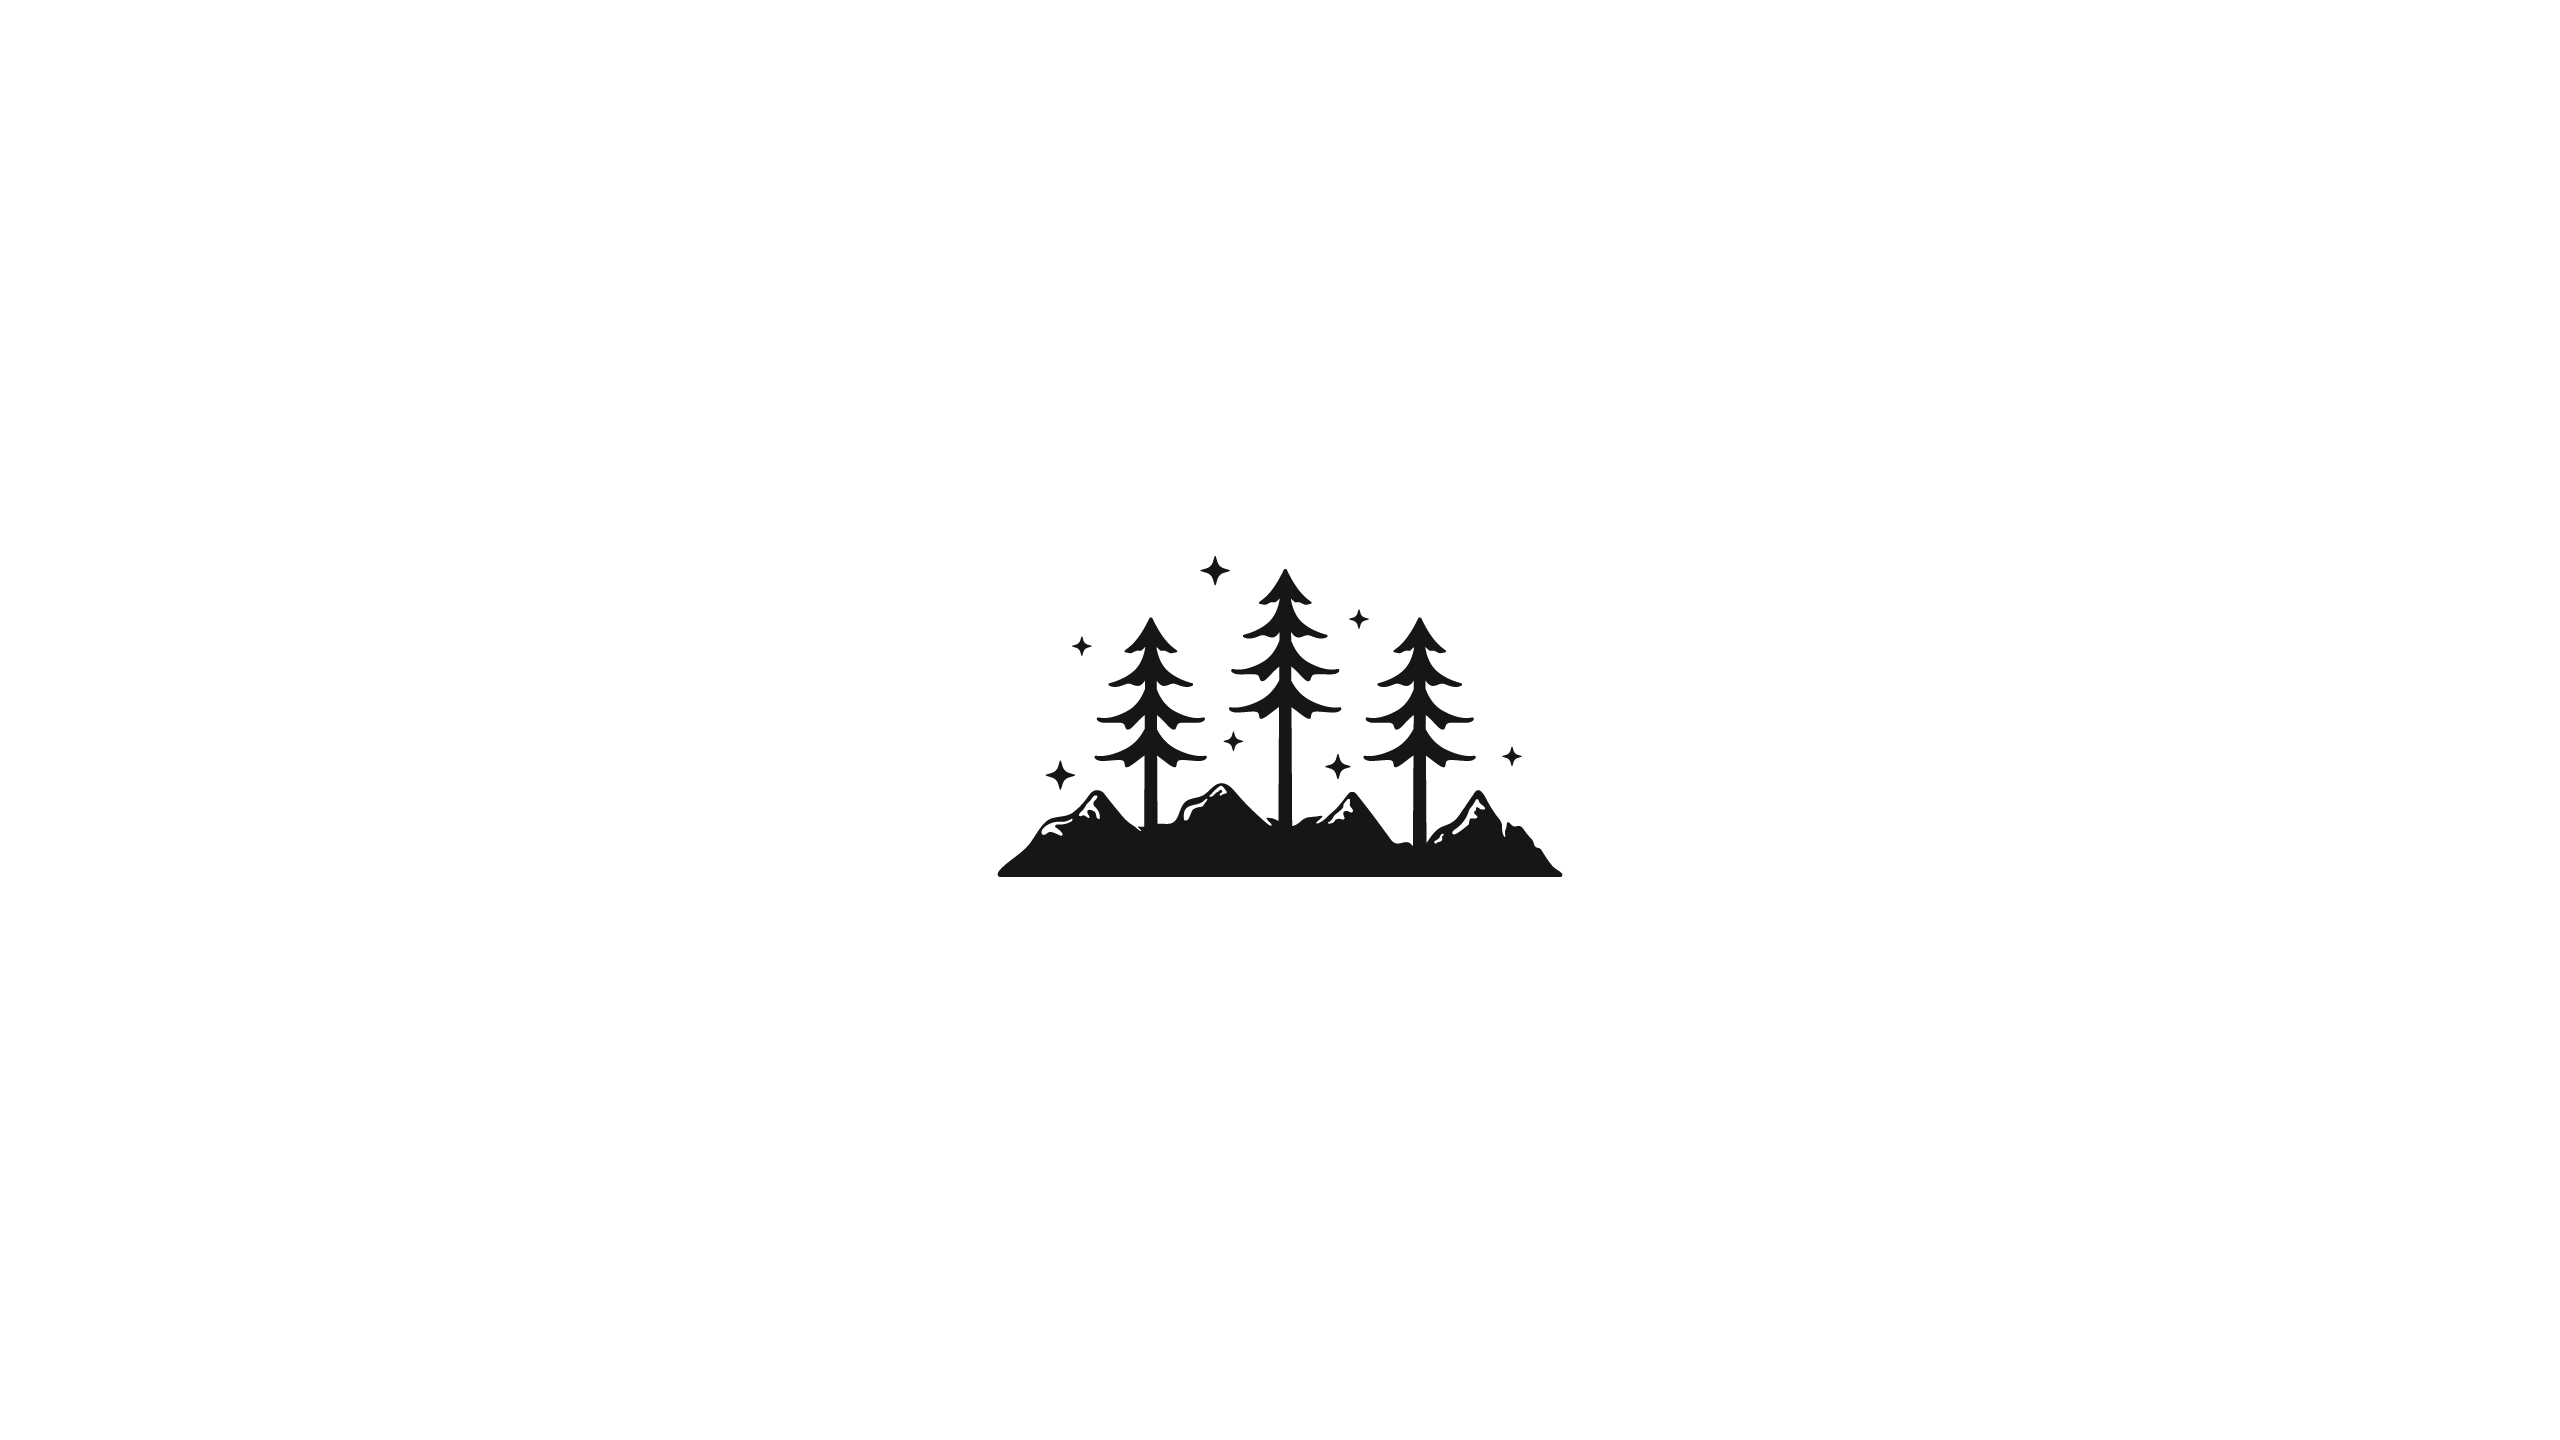 Wallpaper, illustration, white background, pine trees, mountains, minimalism, monochrome 2560x1440